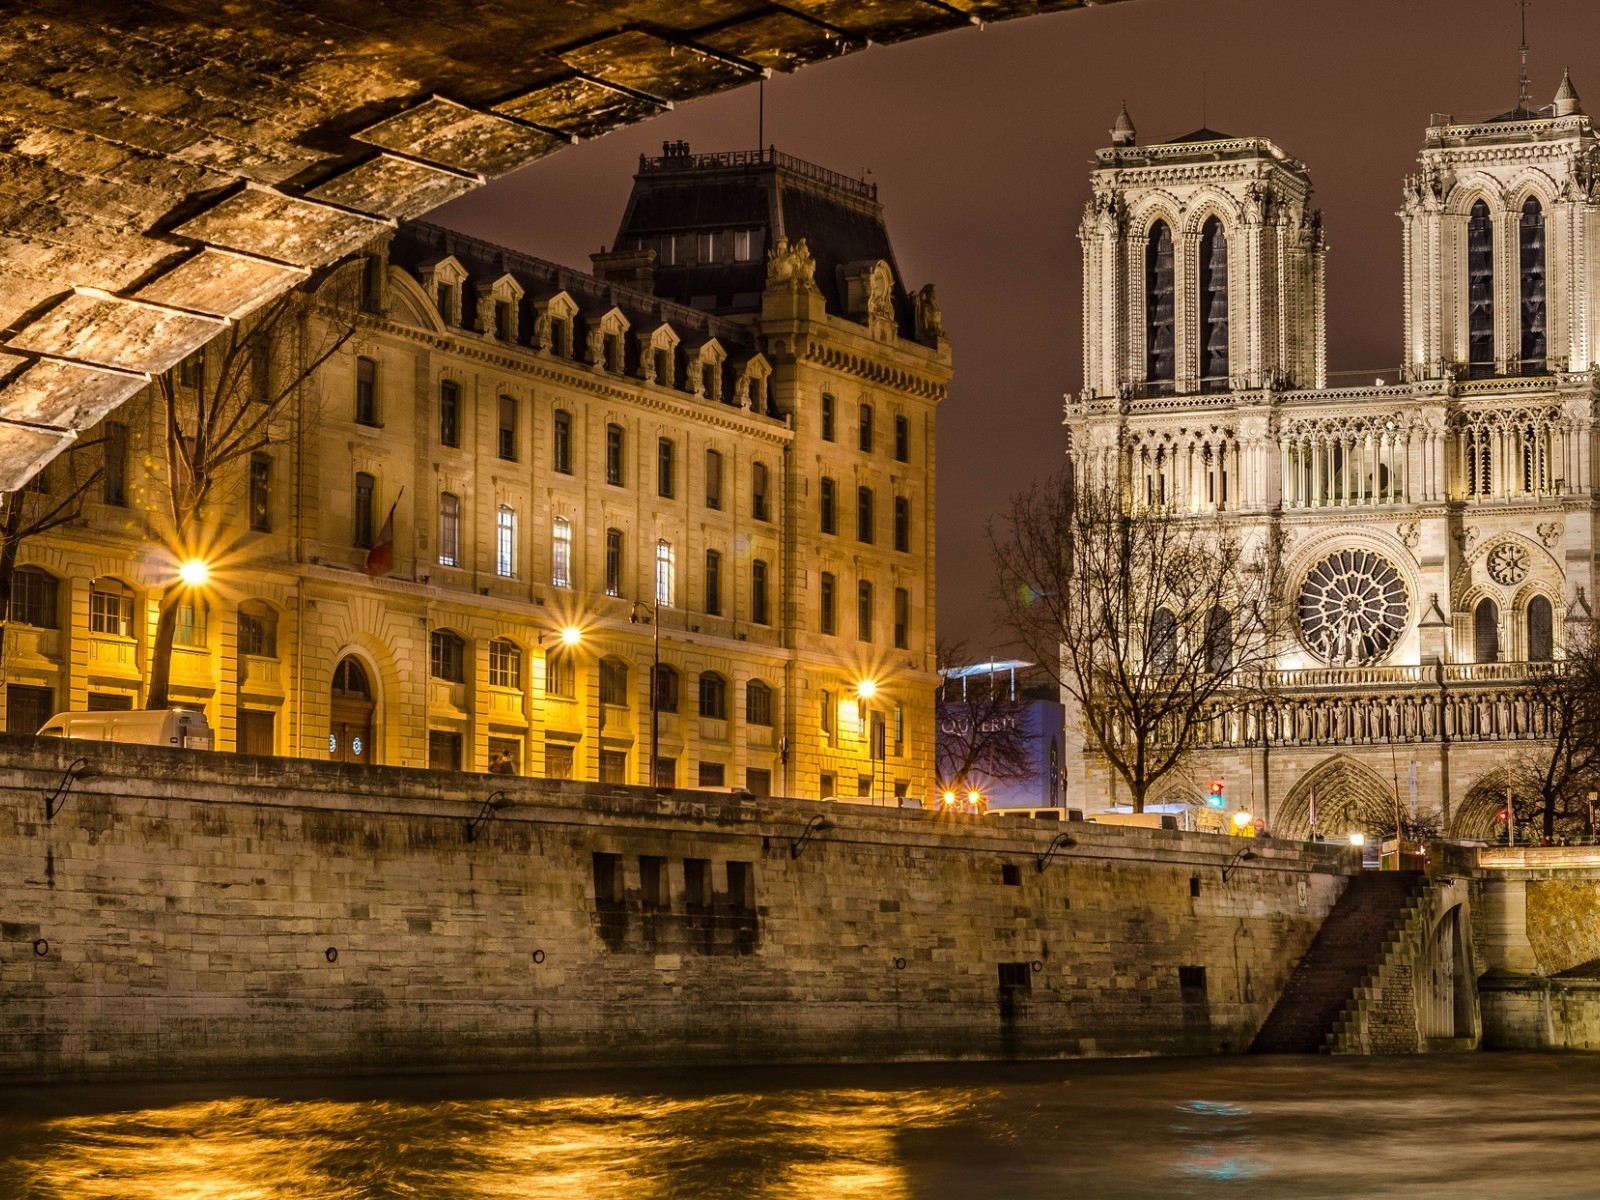 Notre Dame de Paris Front View for 1600 x 1200 resolution